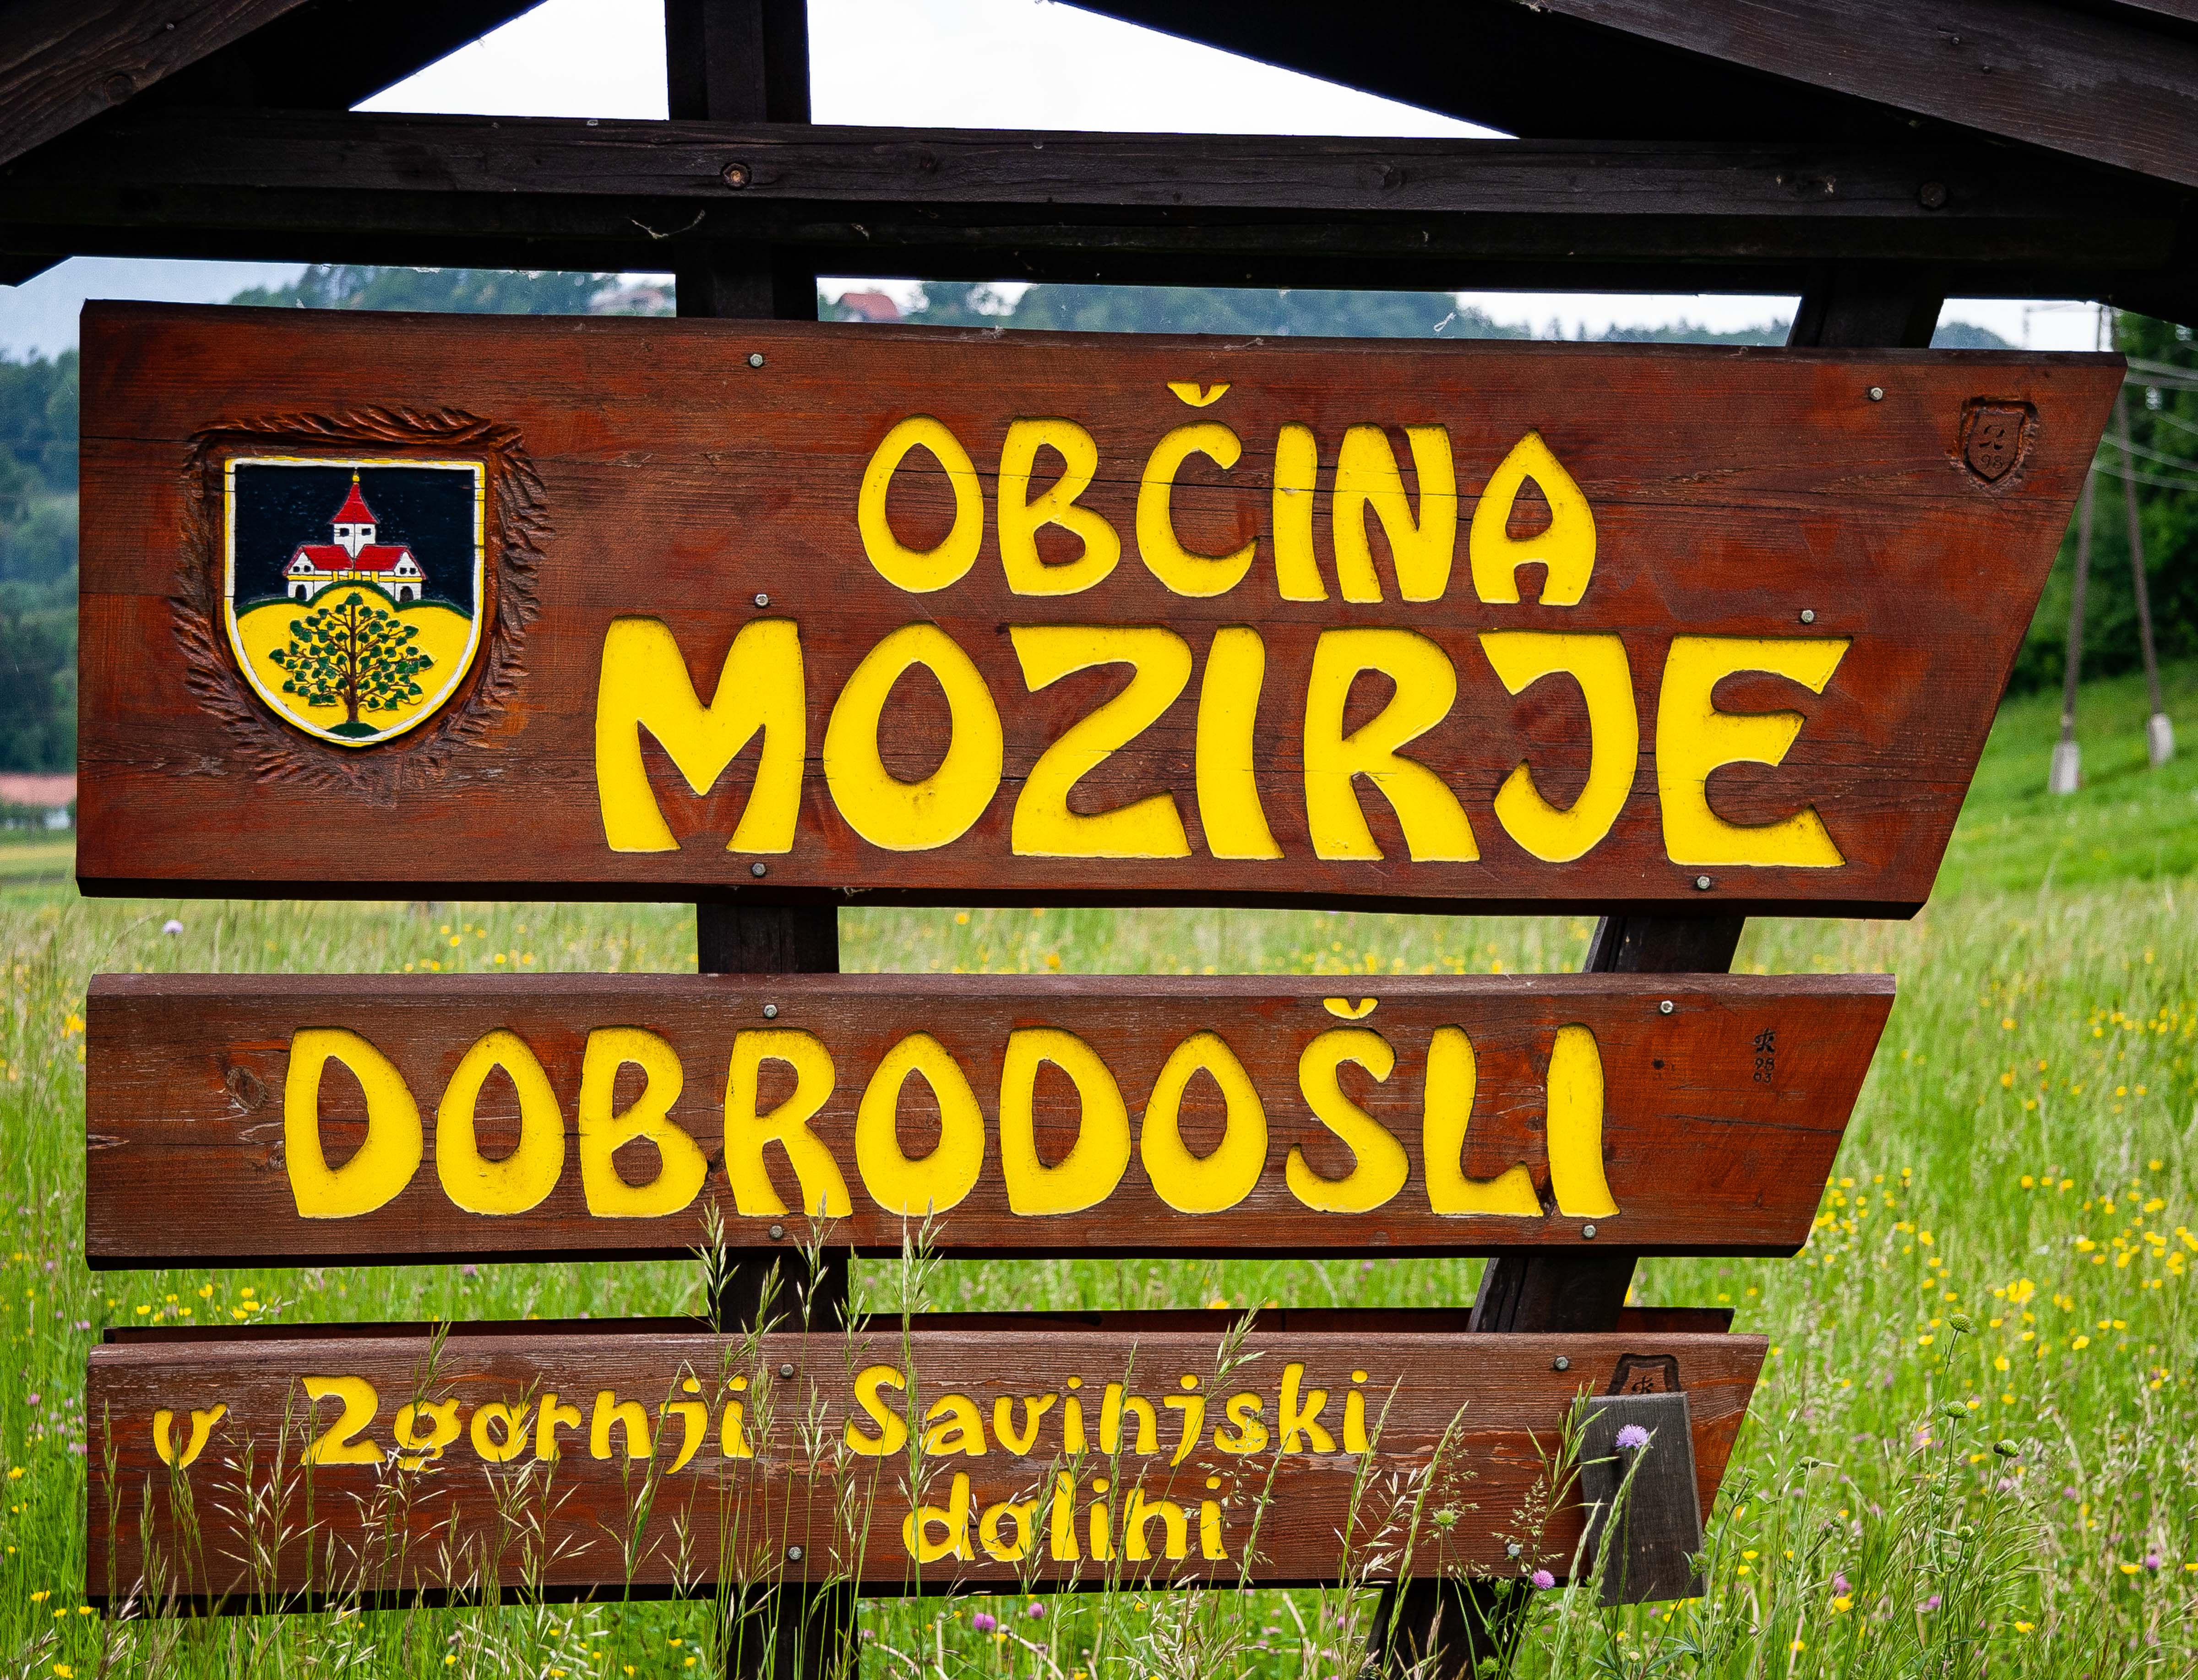 Slovenia, Mozirje Prov, Dobrodosli Obcina Mozirje, 2006, IMG 8185